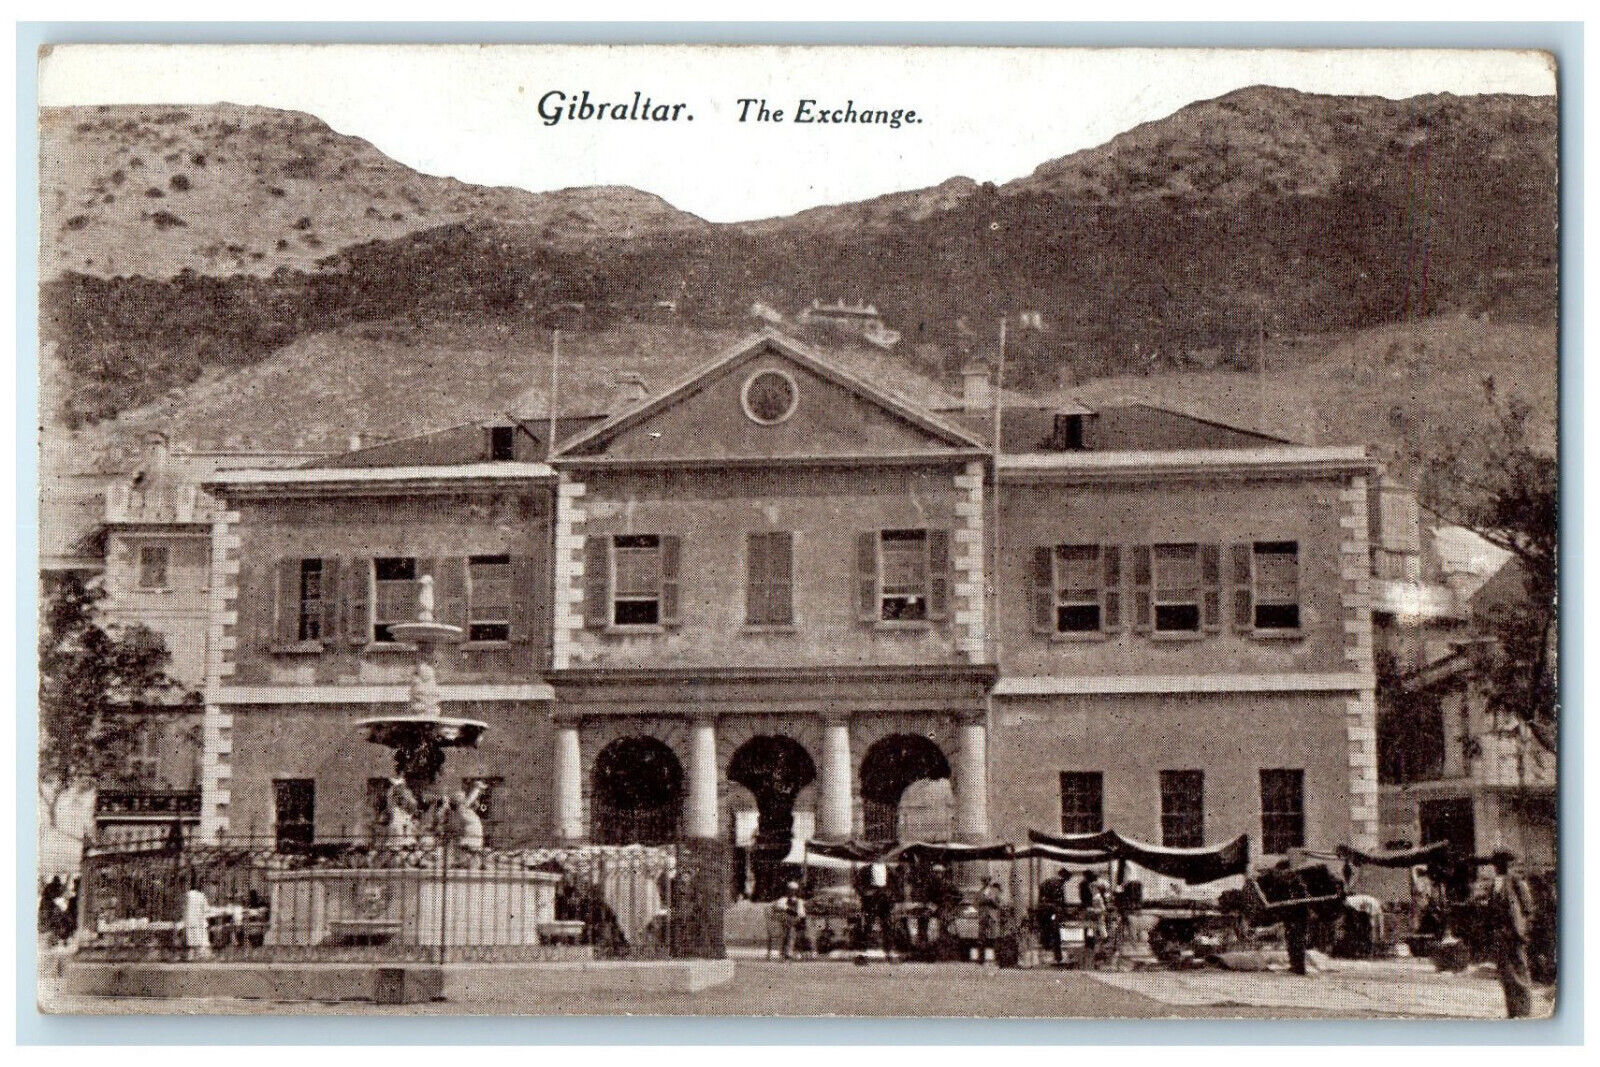 c1910 Market Scene The Exchange Building Entrance Gibraltar Antique Postcard